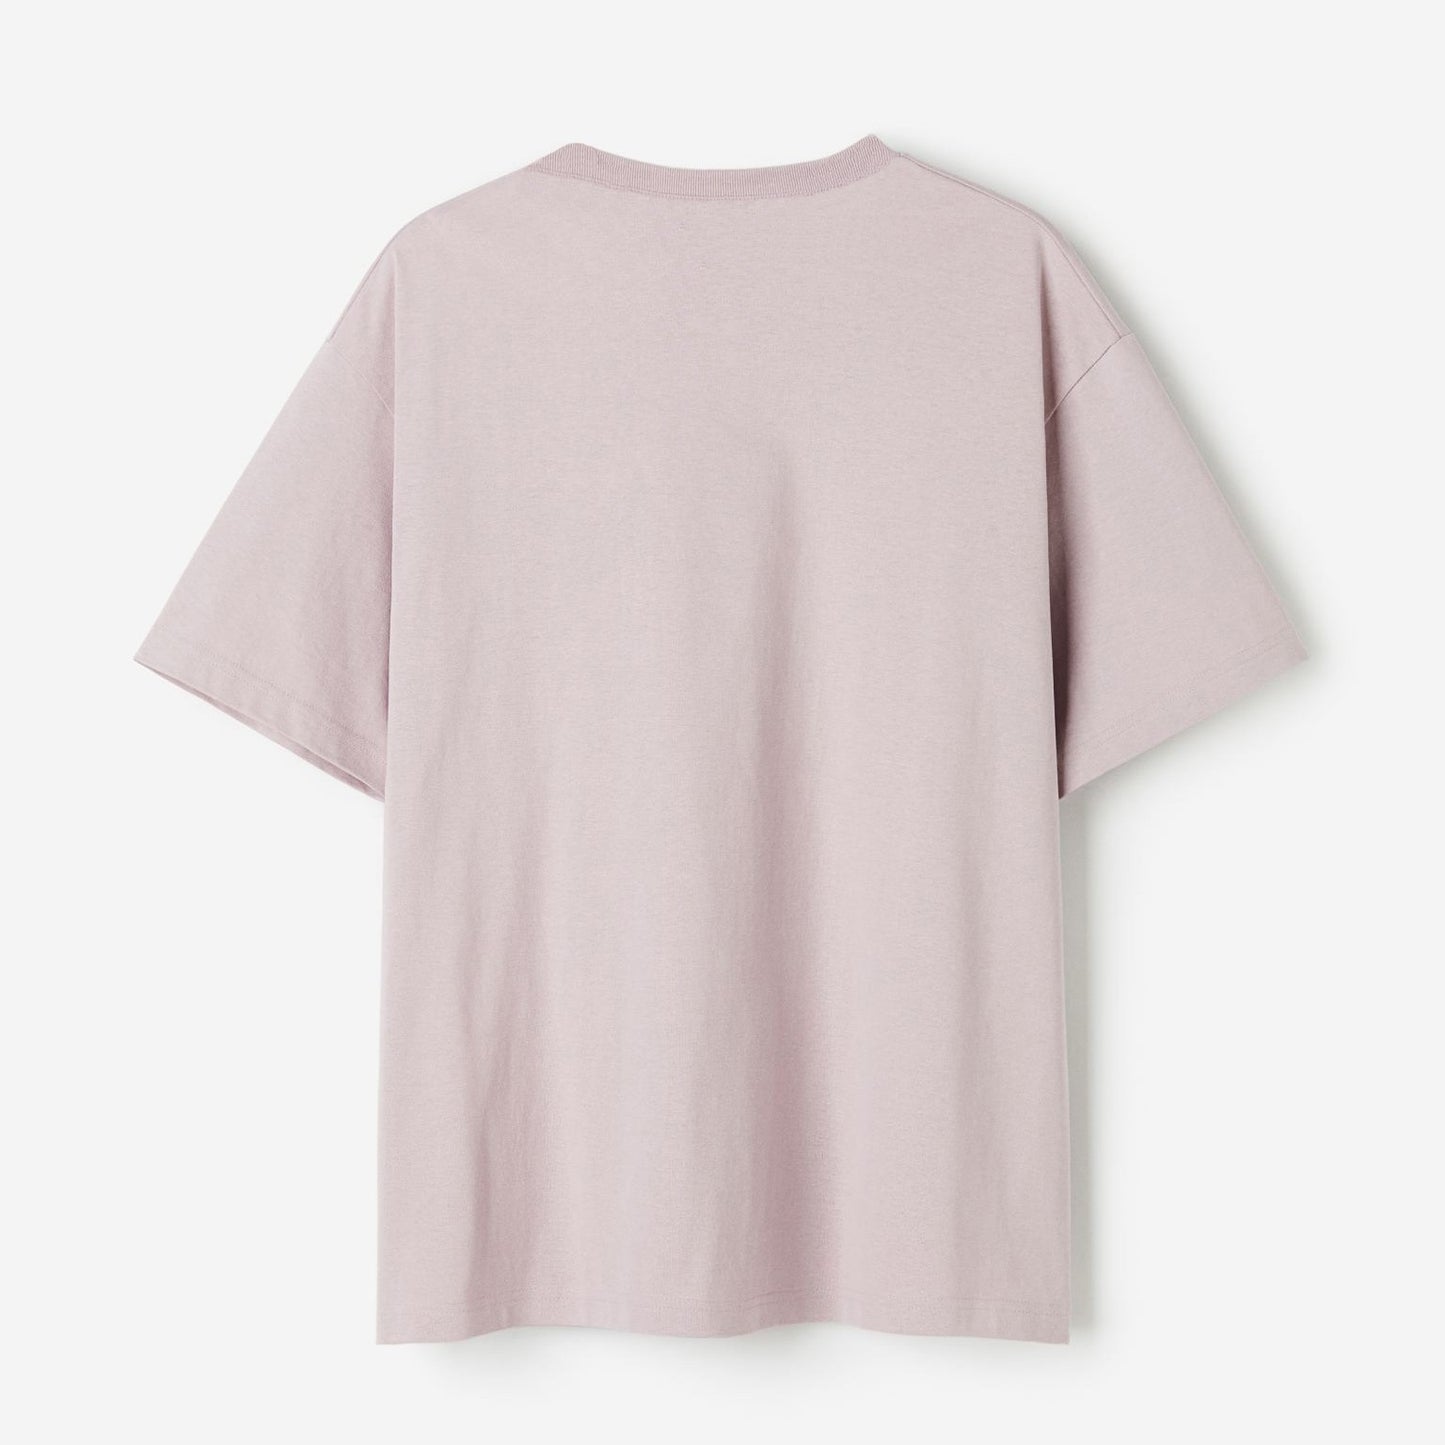 Plain Oversized Lavender Cotton T-shirt